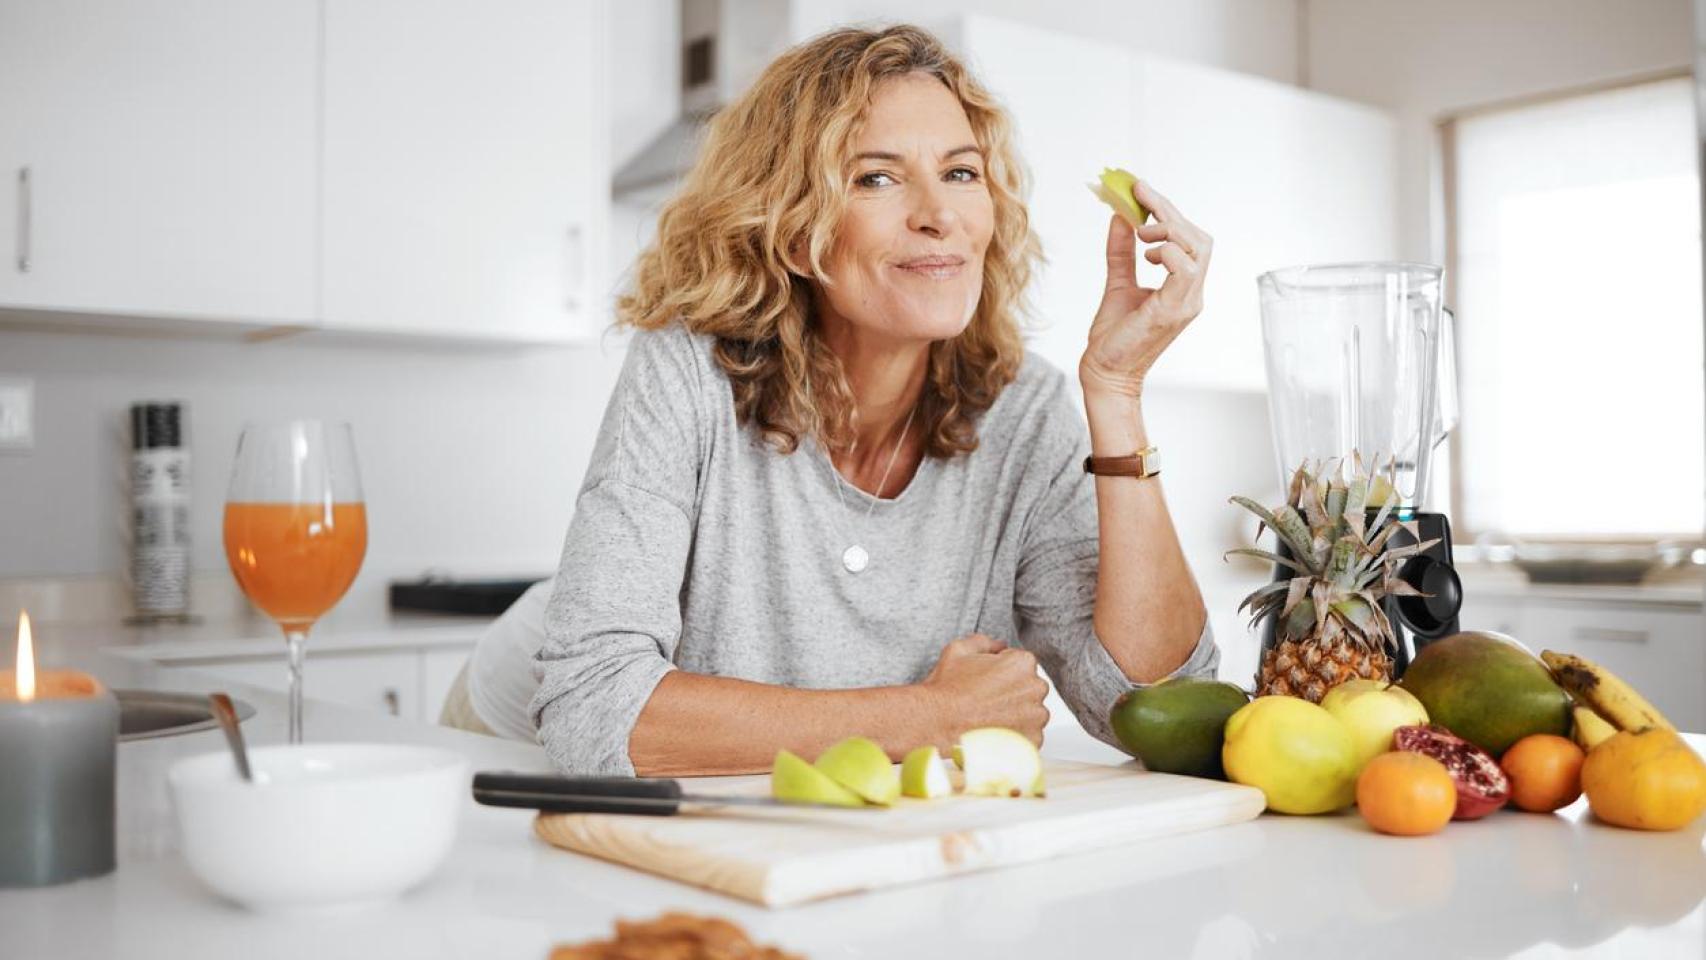 La reducción de estrógenos durante la menopausia también puede afectar el metabolismo.